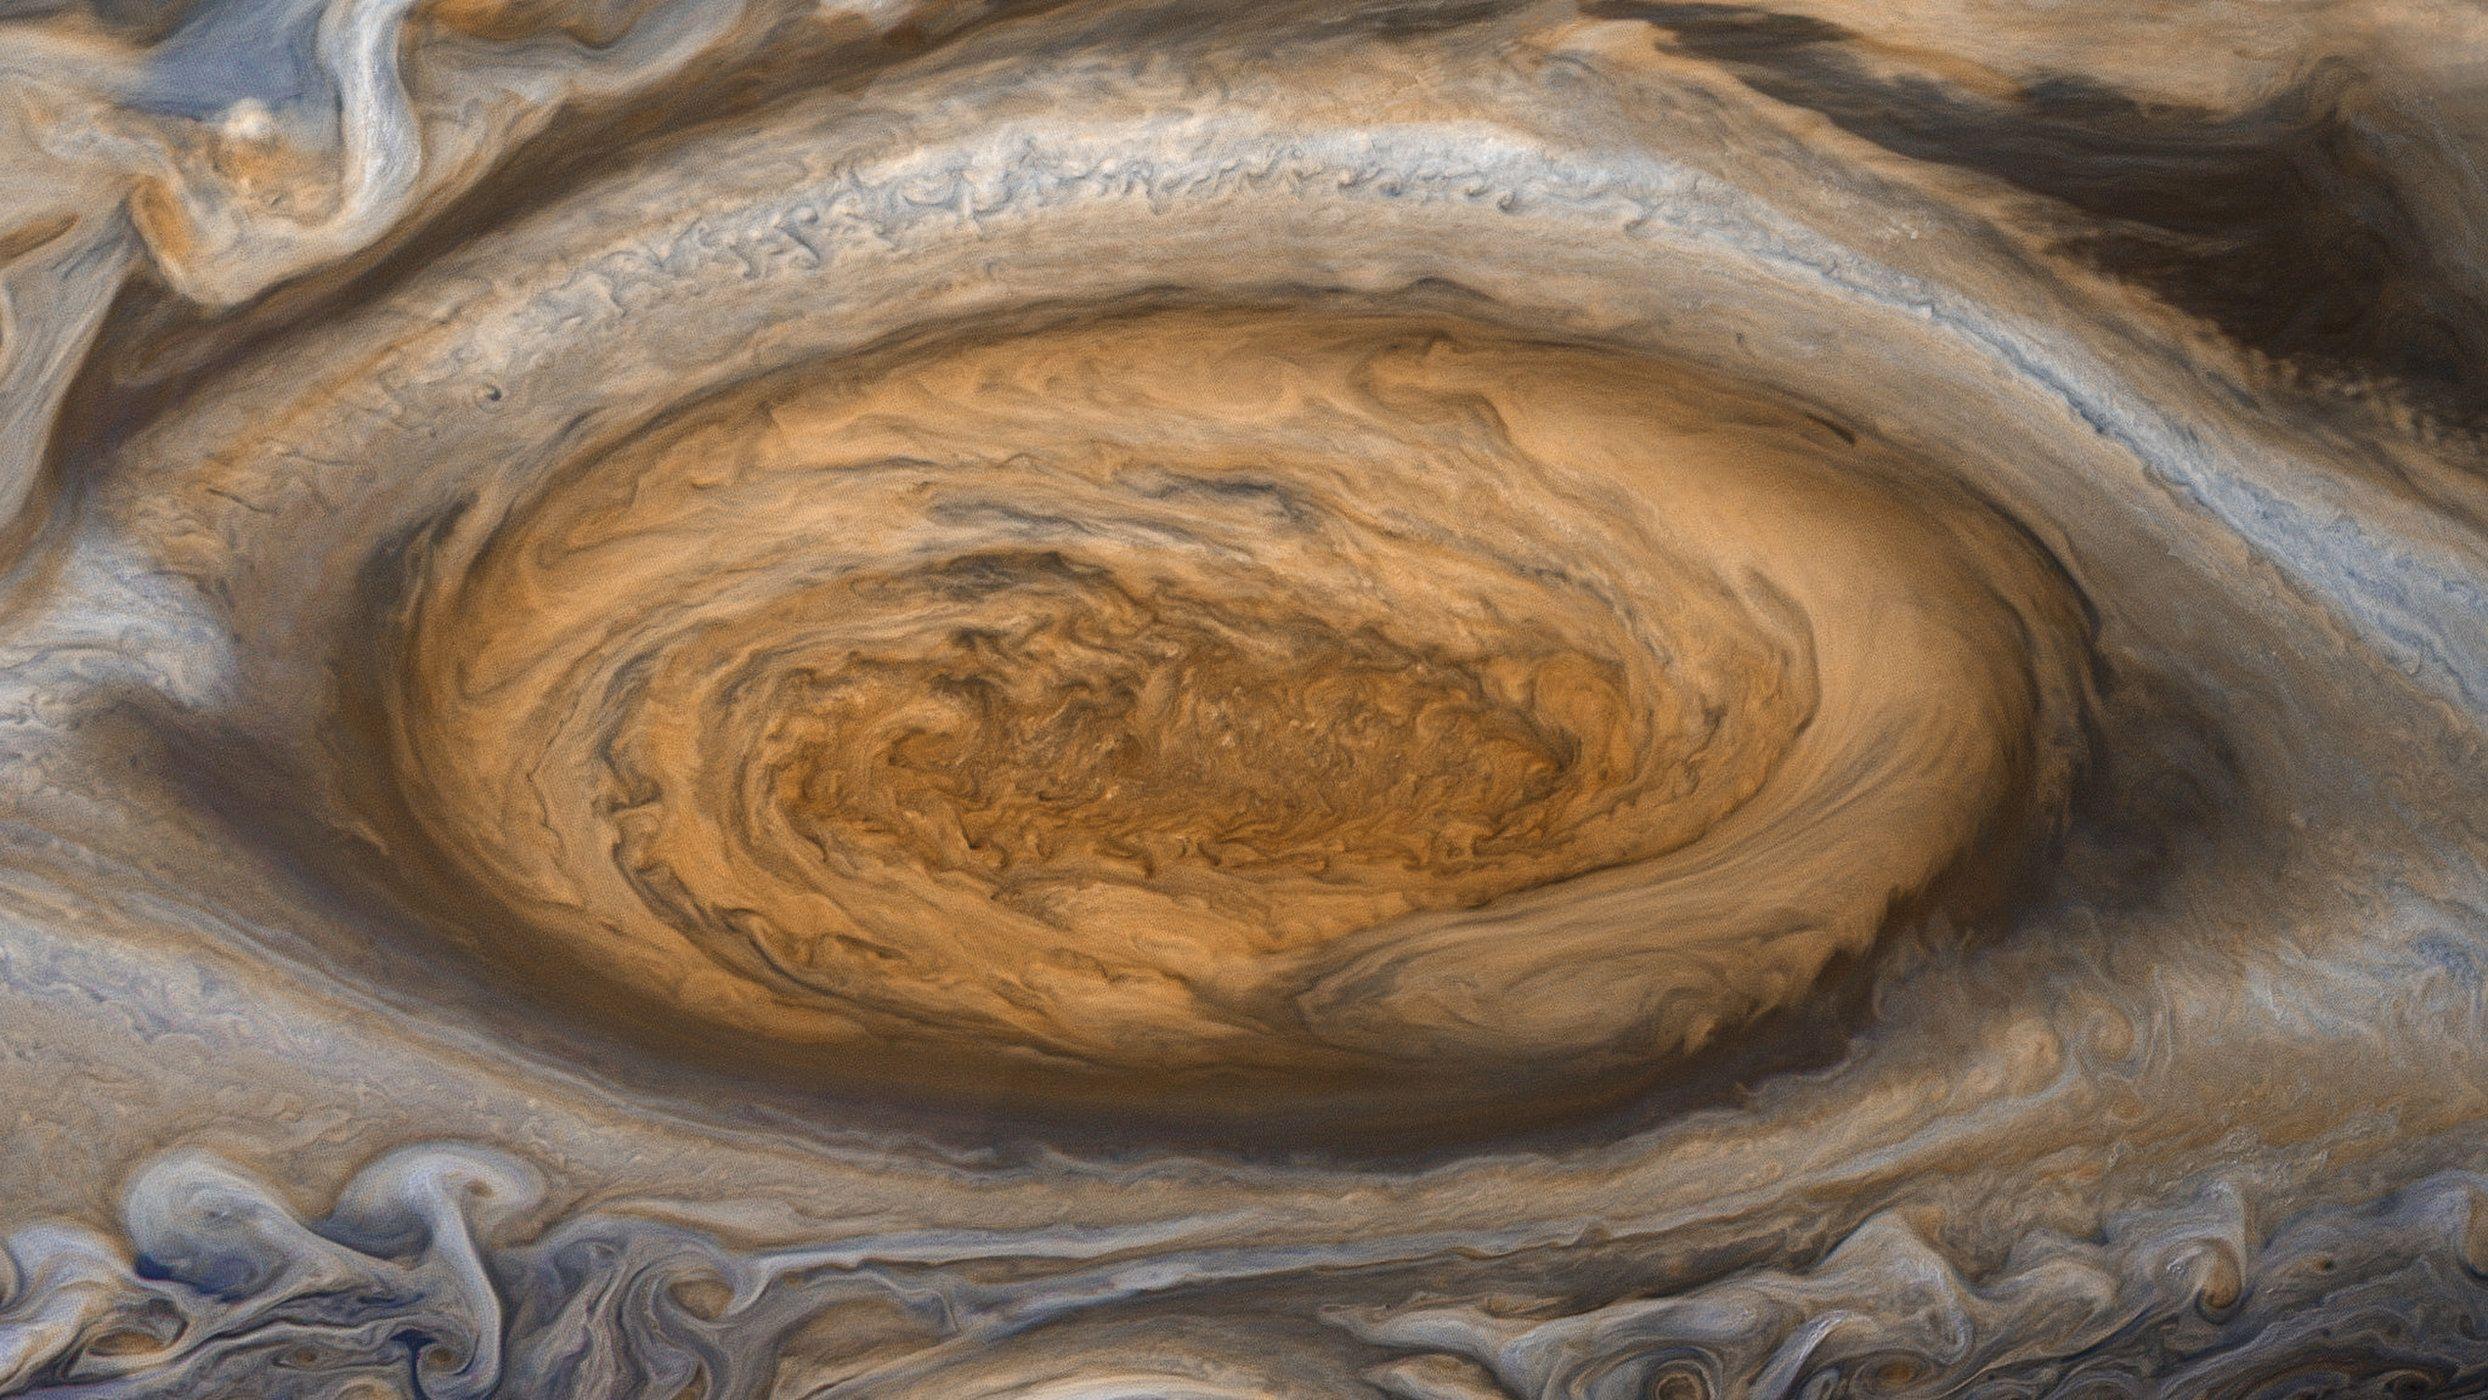 木星图片南极图片